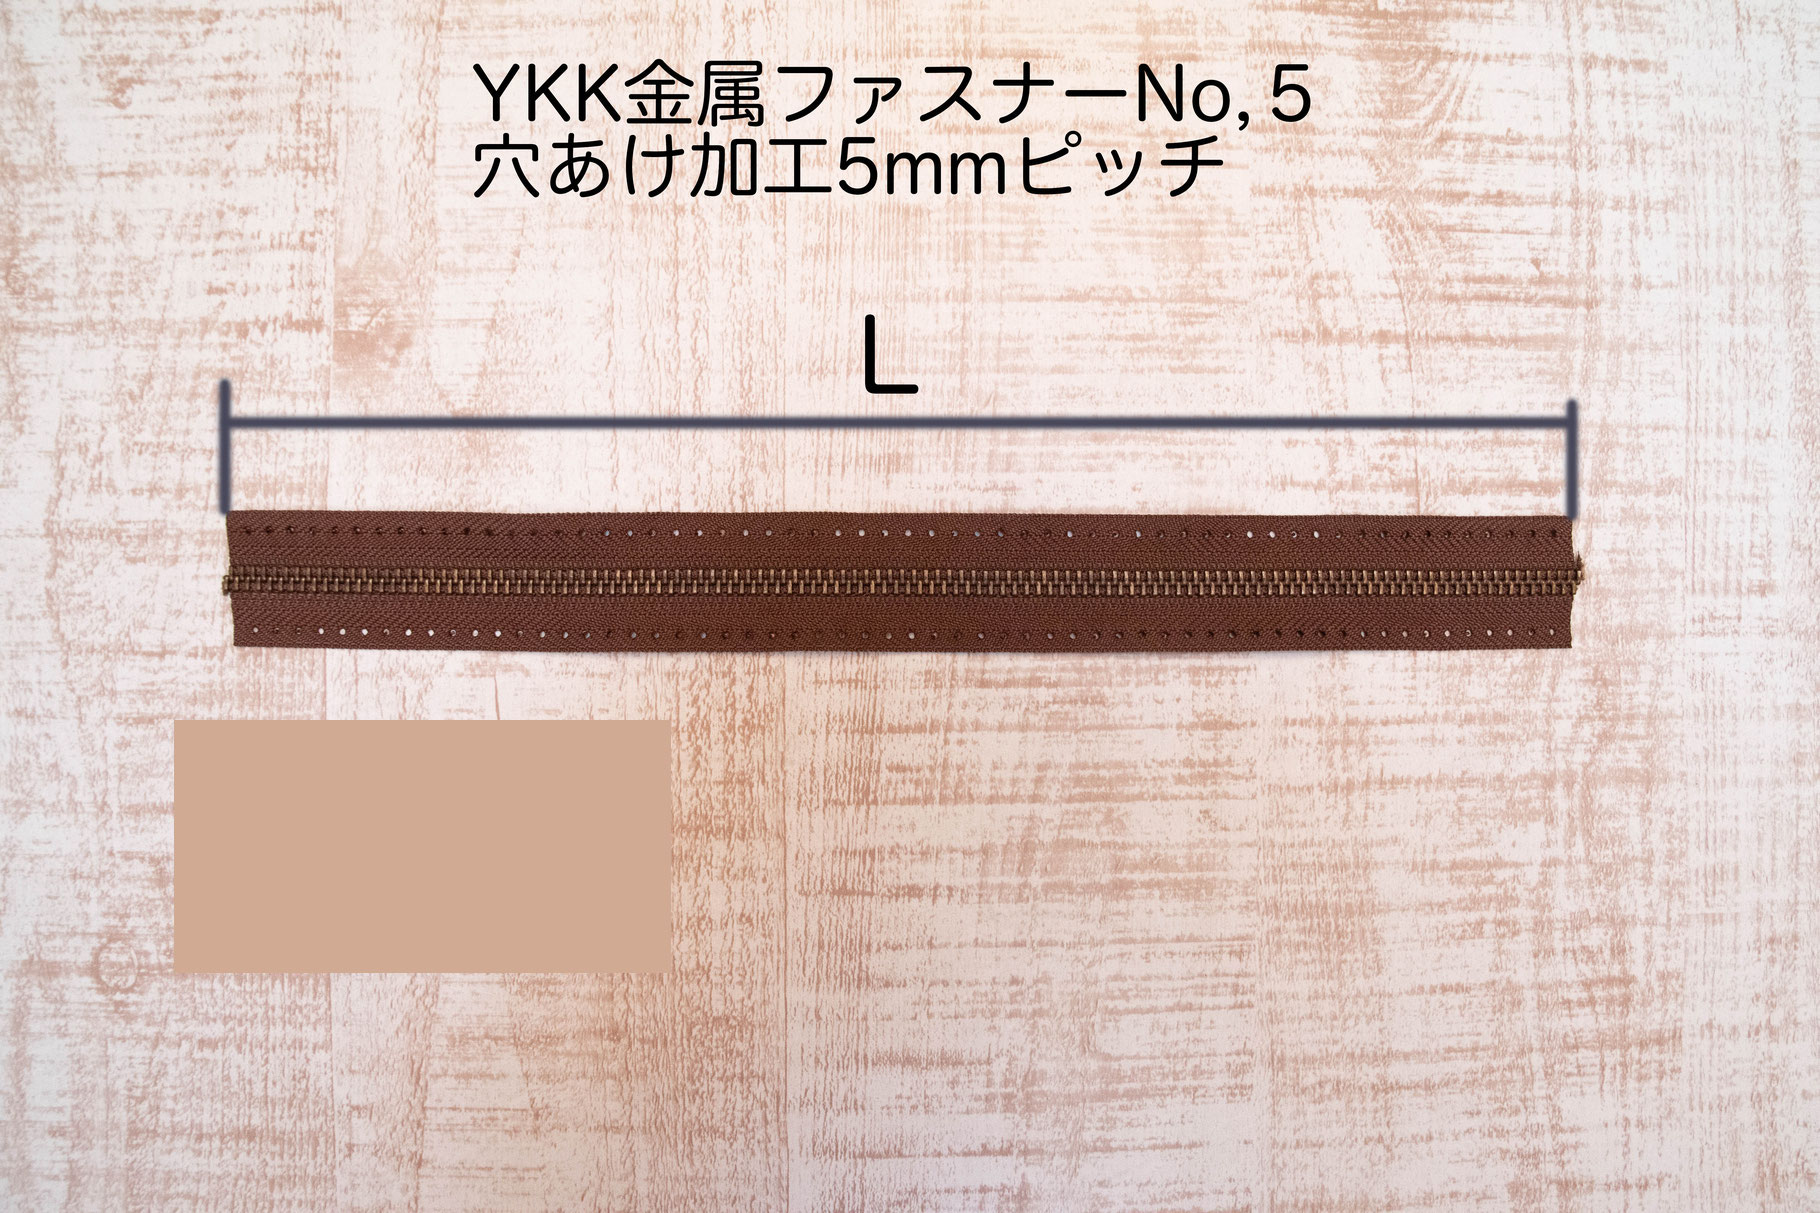 YKK金属ファスナーテープNo.5 AG #568 穴あき加工ピッチ５mm画像